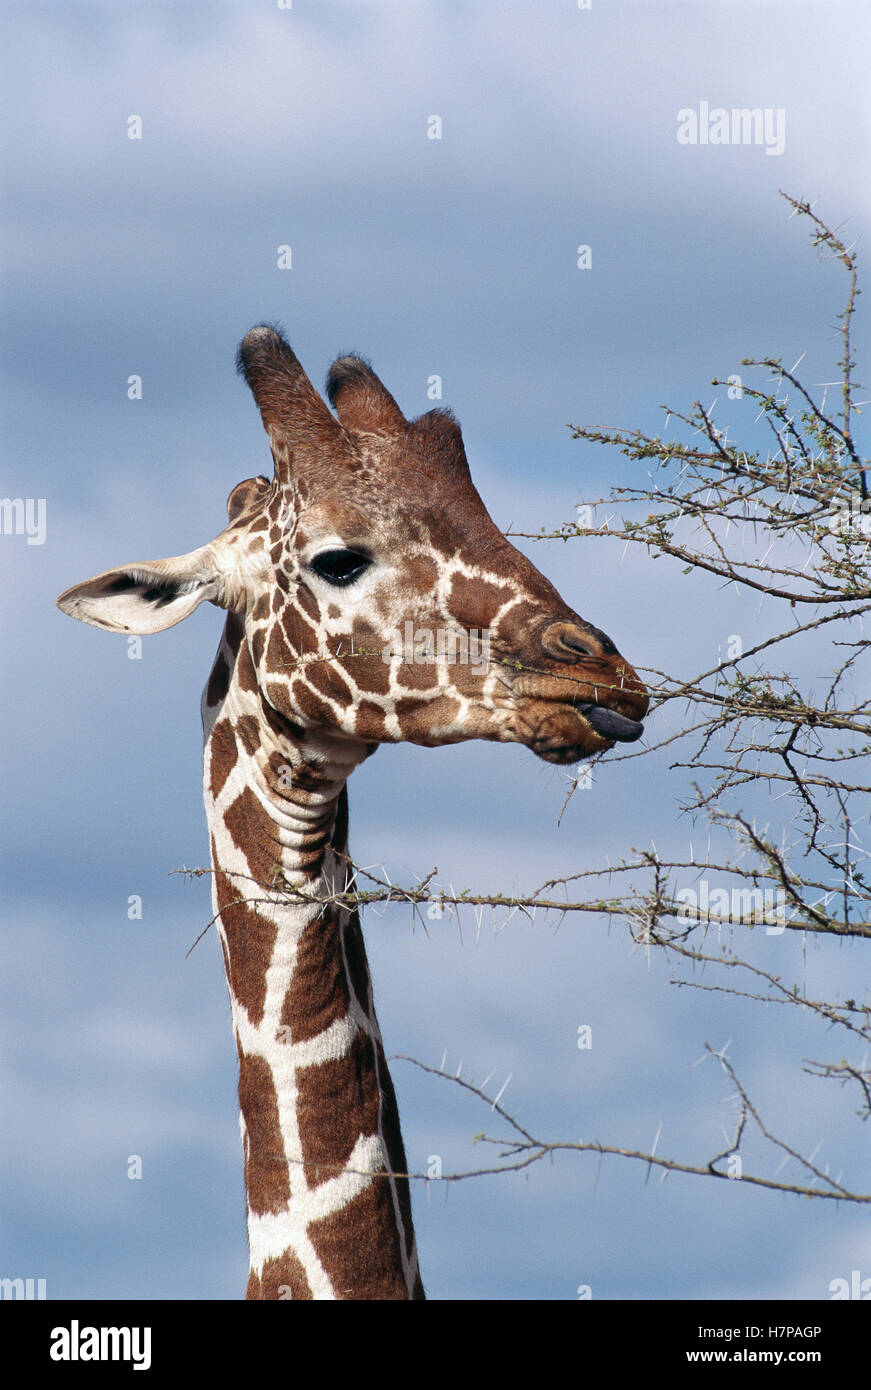 Masai jirafa (Giraffa camelopardalis tippelskirchi) mamífero más alto en el mundo, navegue entre las Acacias Espinosas aferramiento dispara Foto de stock